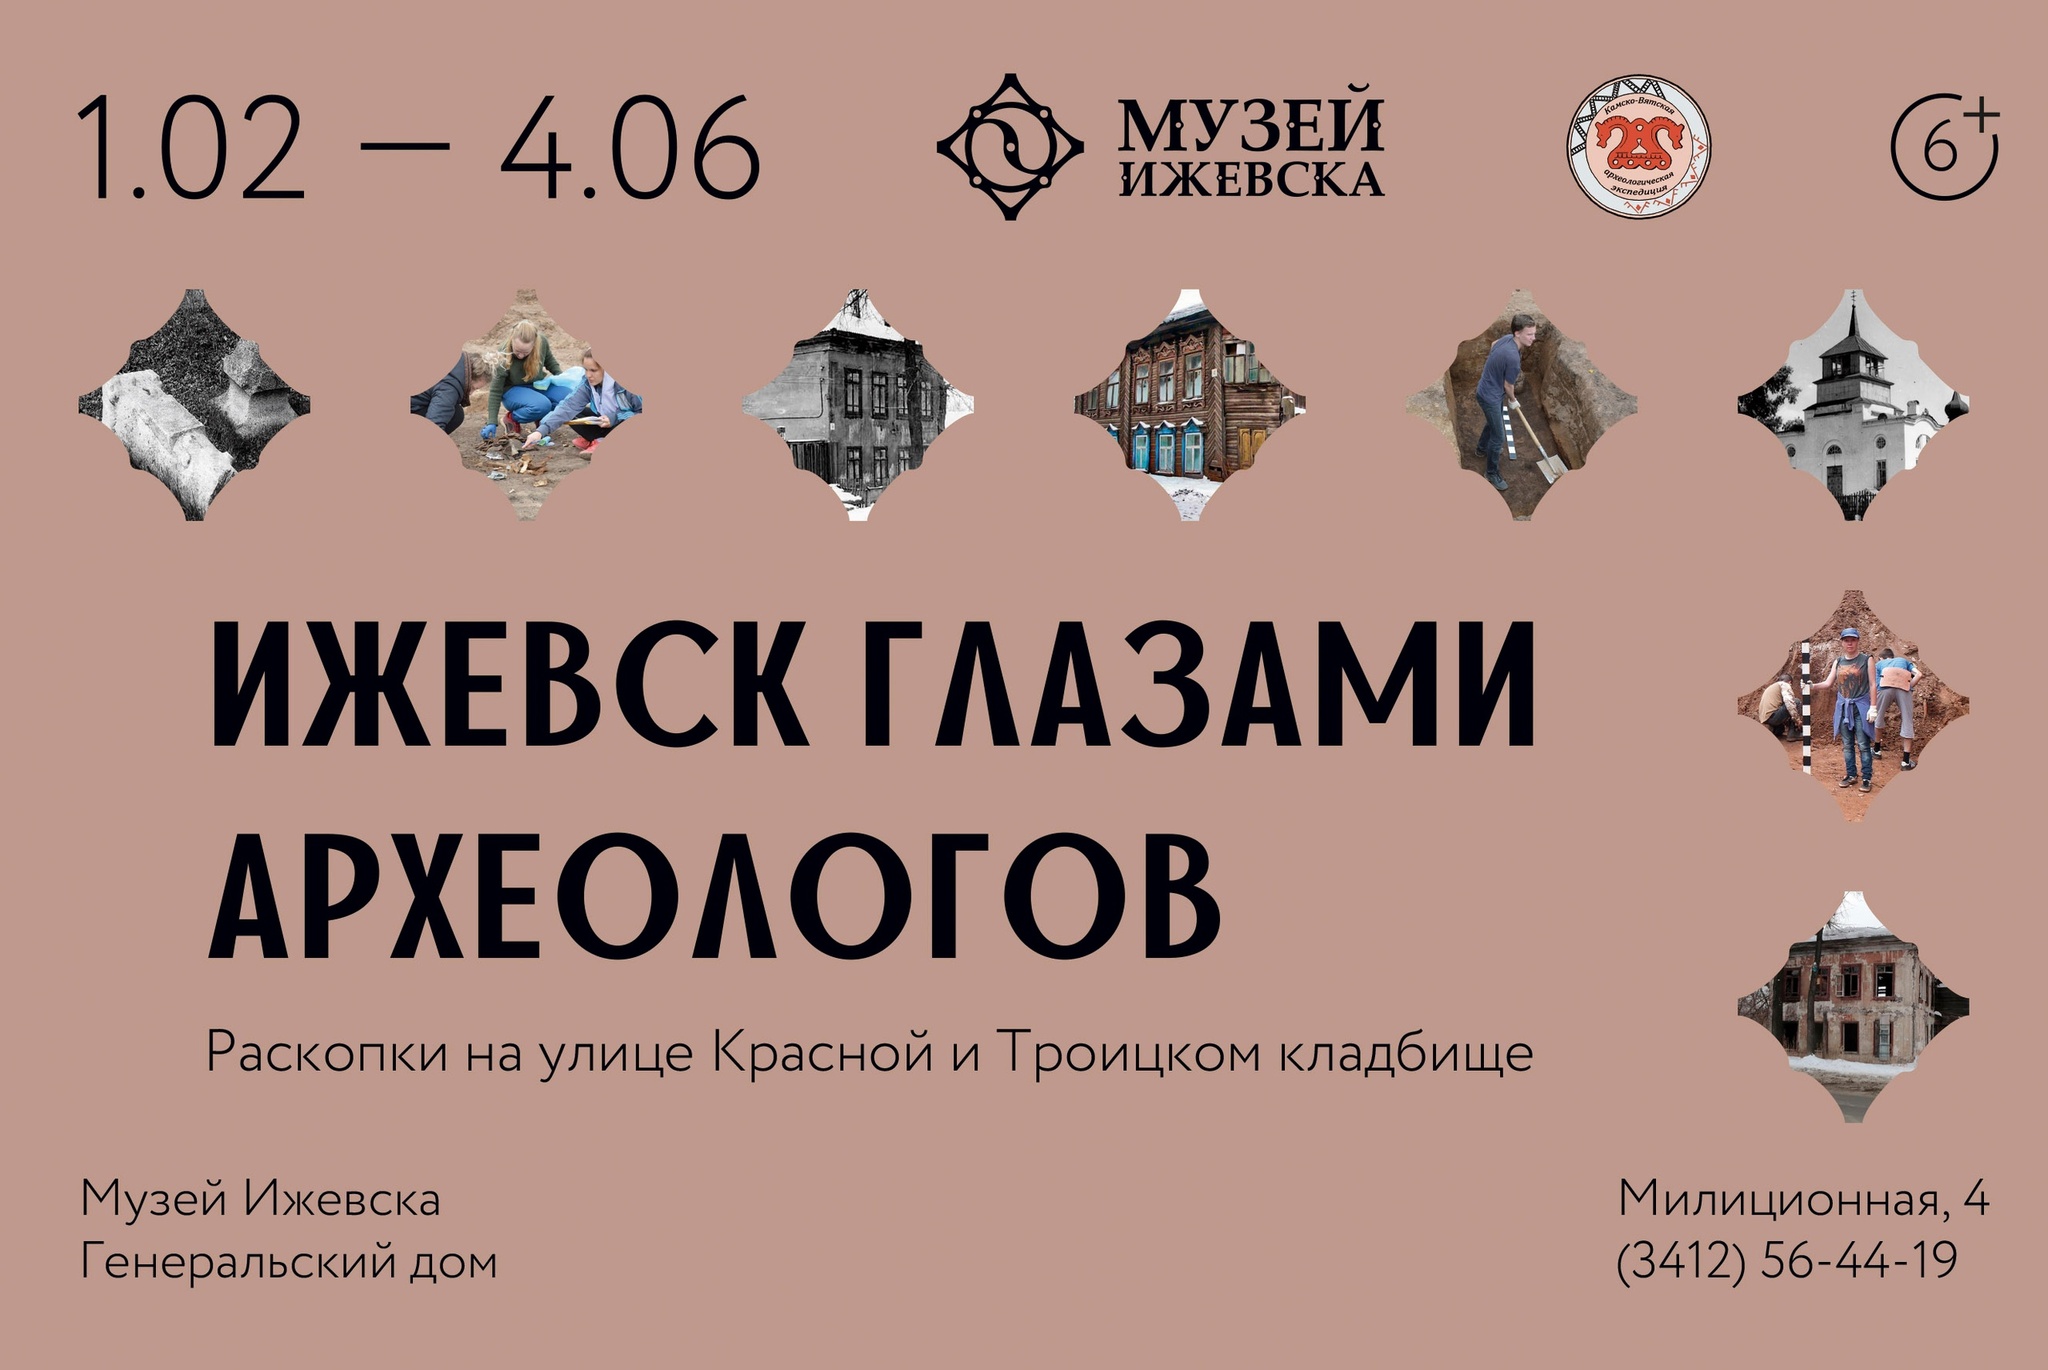 Афиша Ижевска — Выставка «Ижевск глазами археологов»